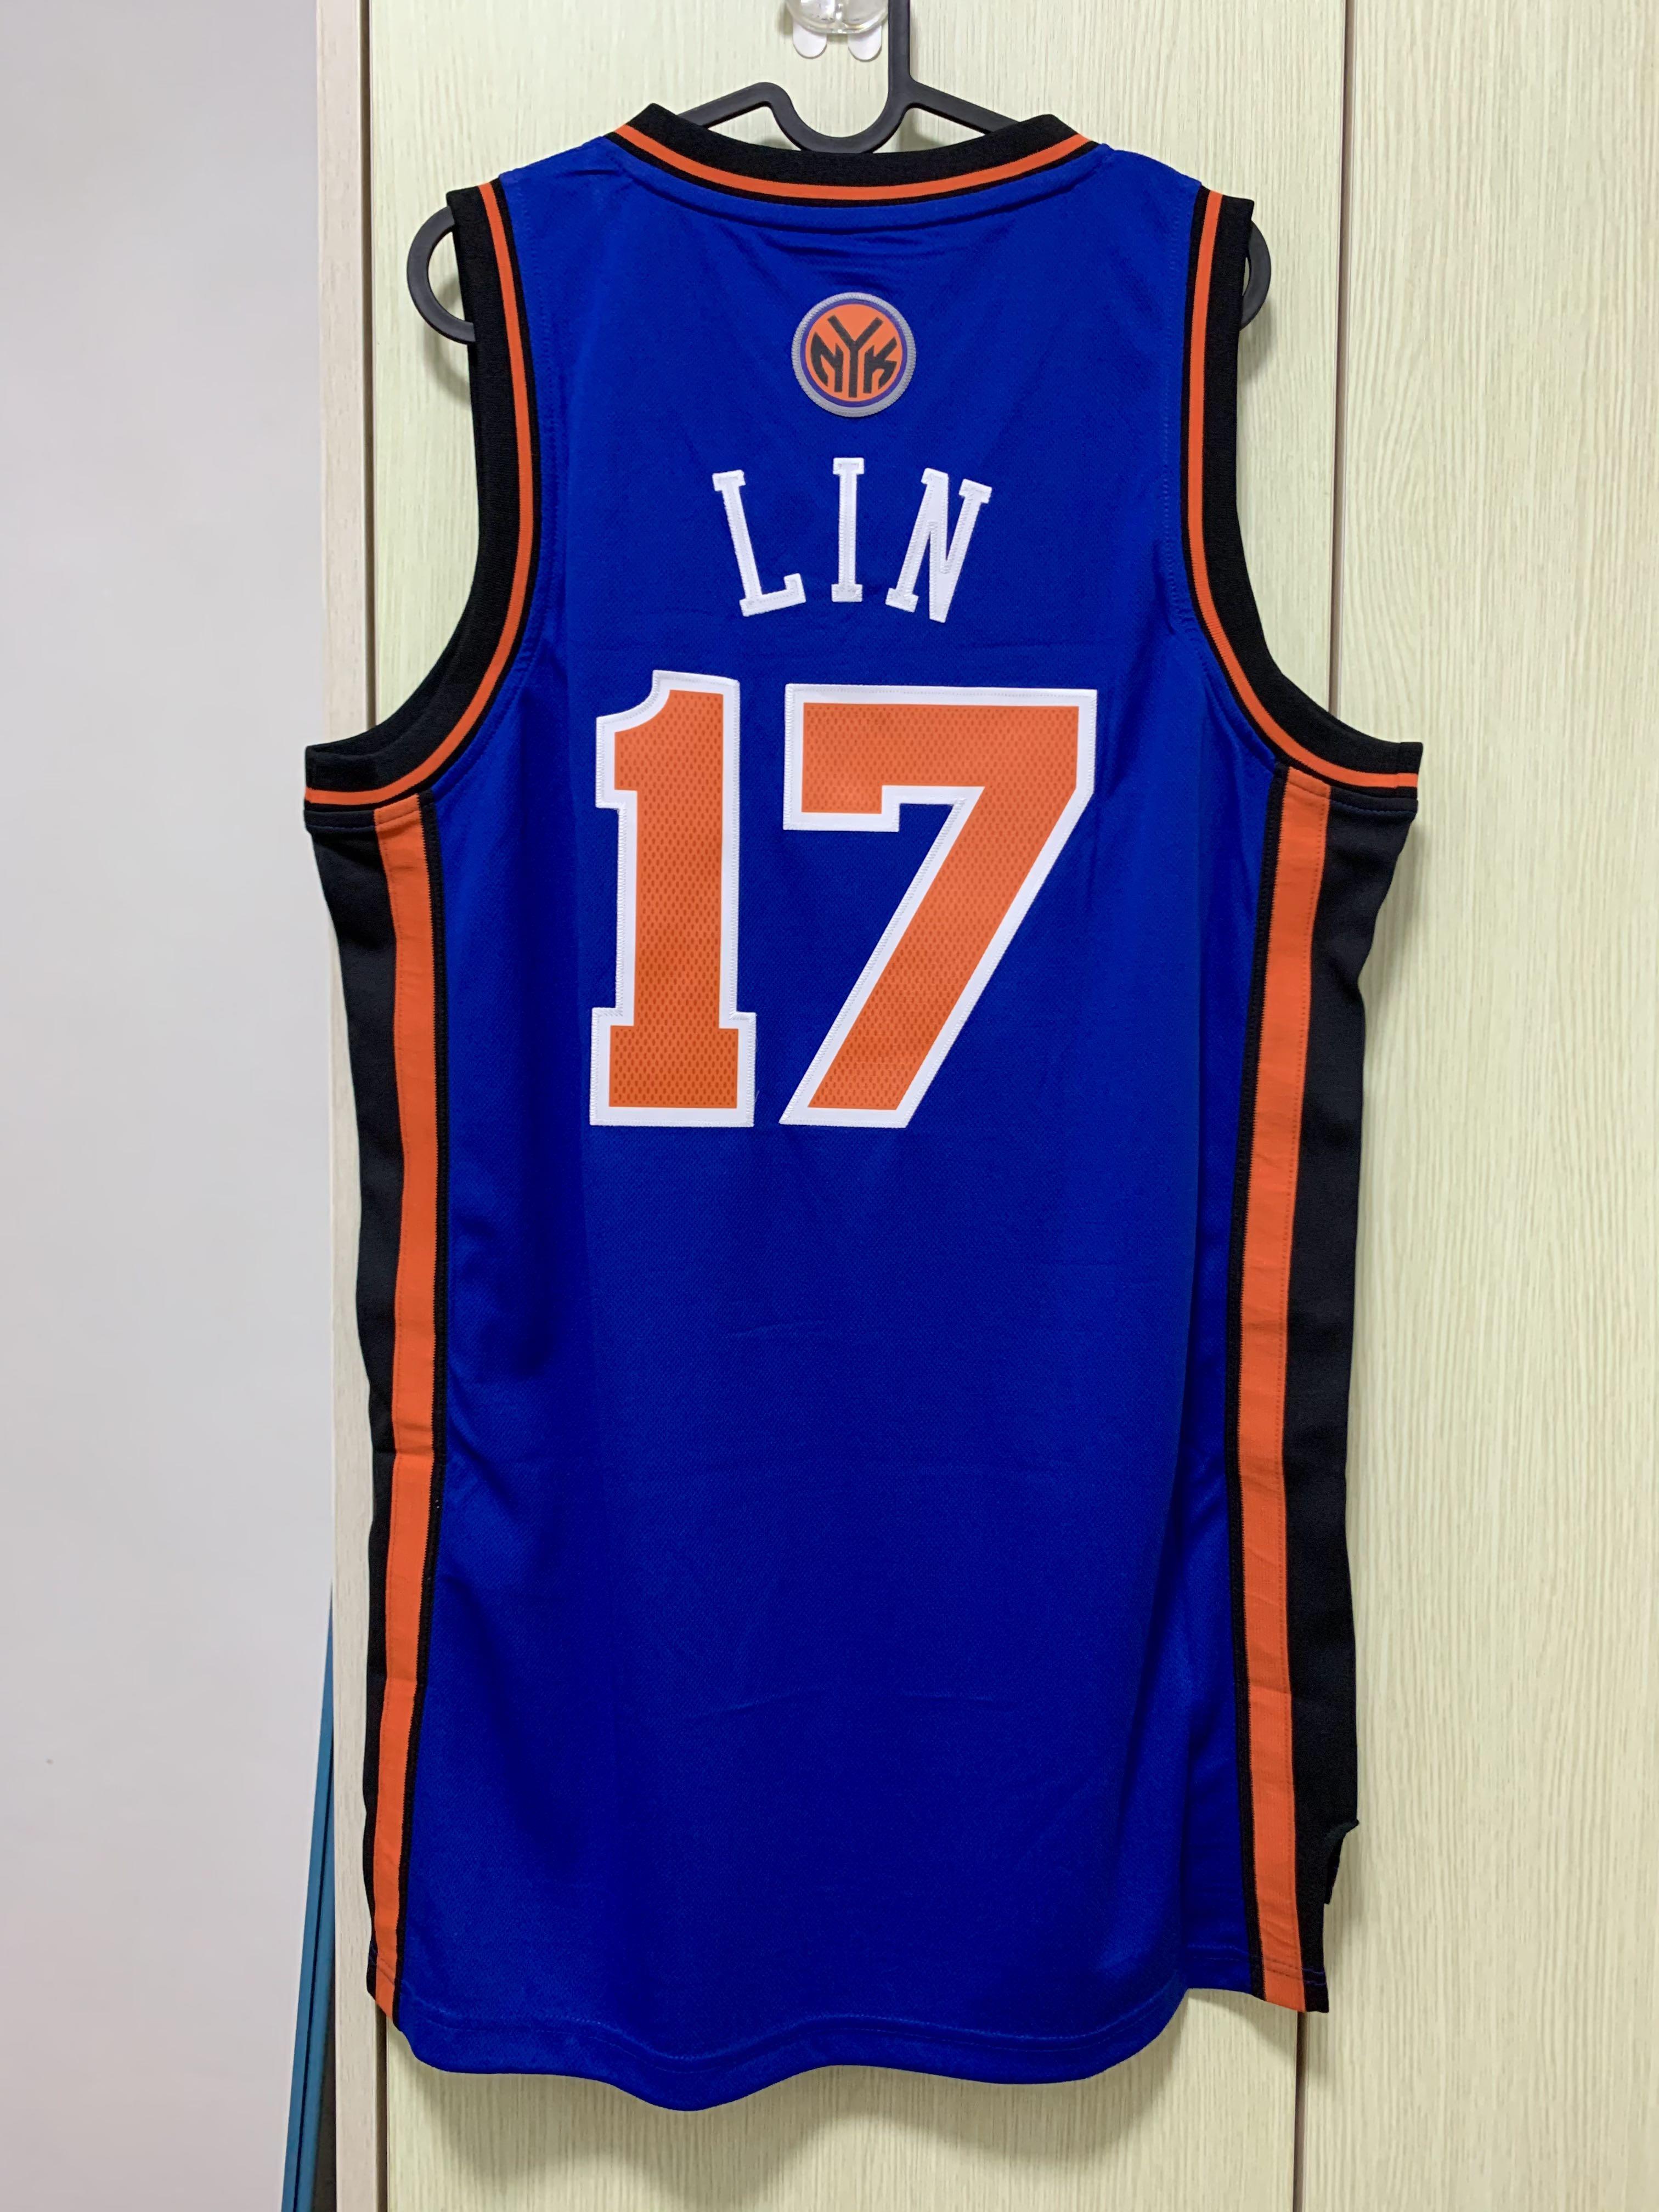 100% Authentic Jeremy Lin 2011 NY Knicks Pro Cut Jersey Size L+2 Mens